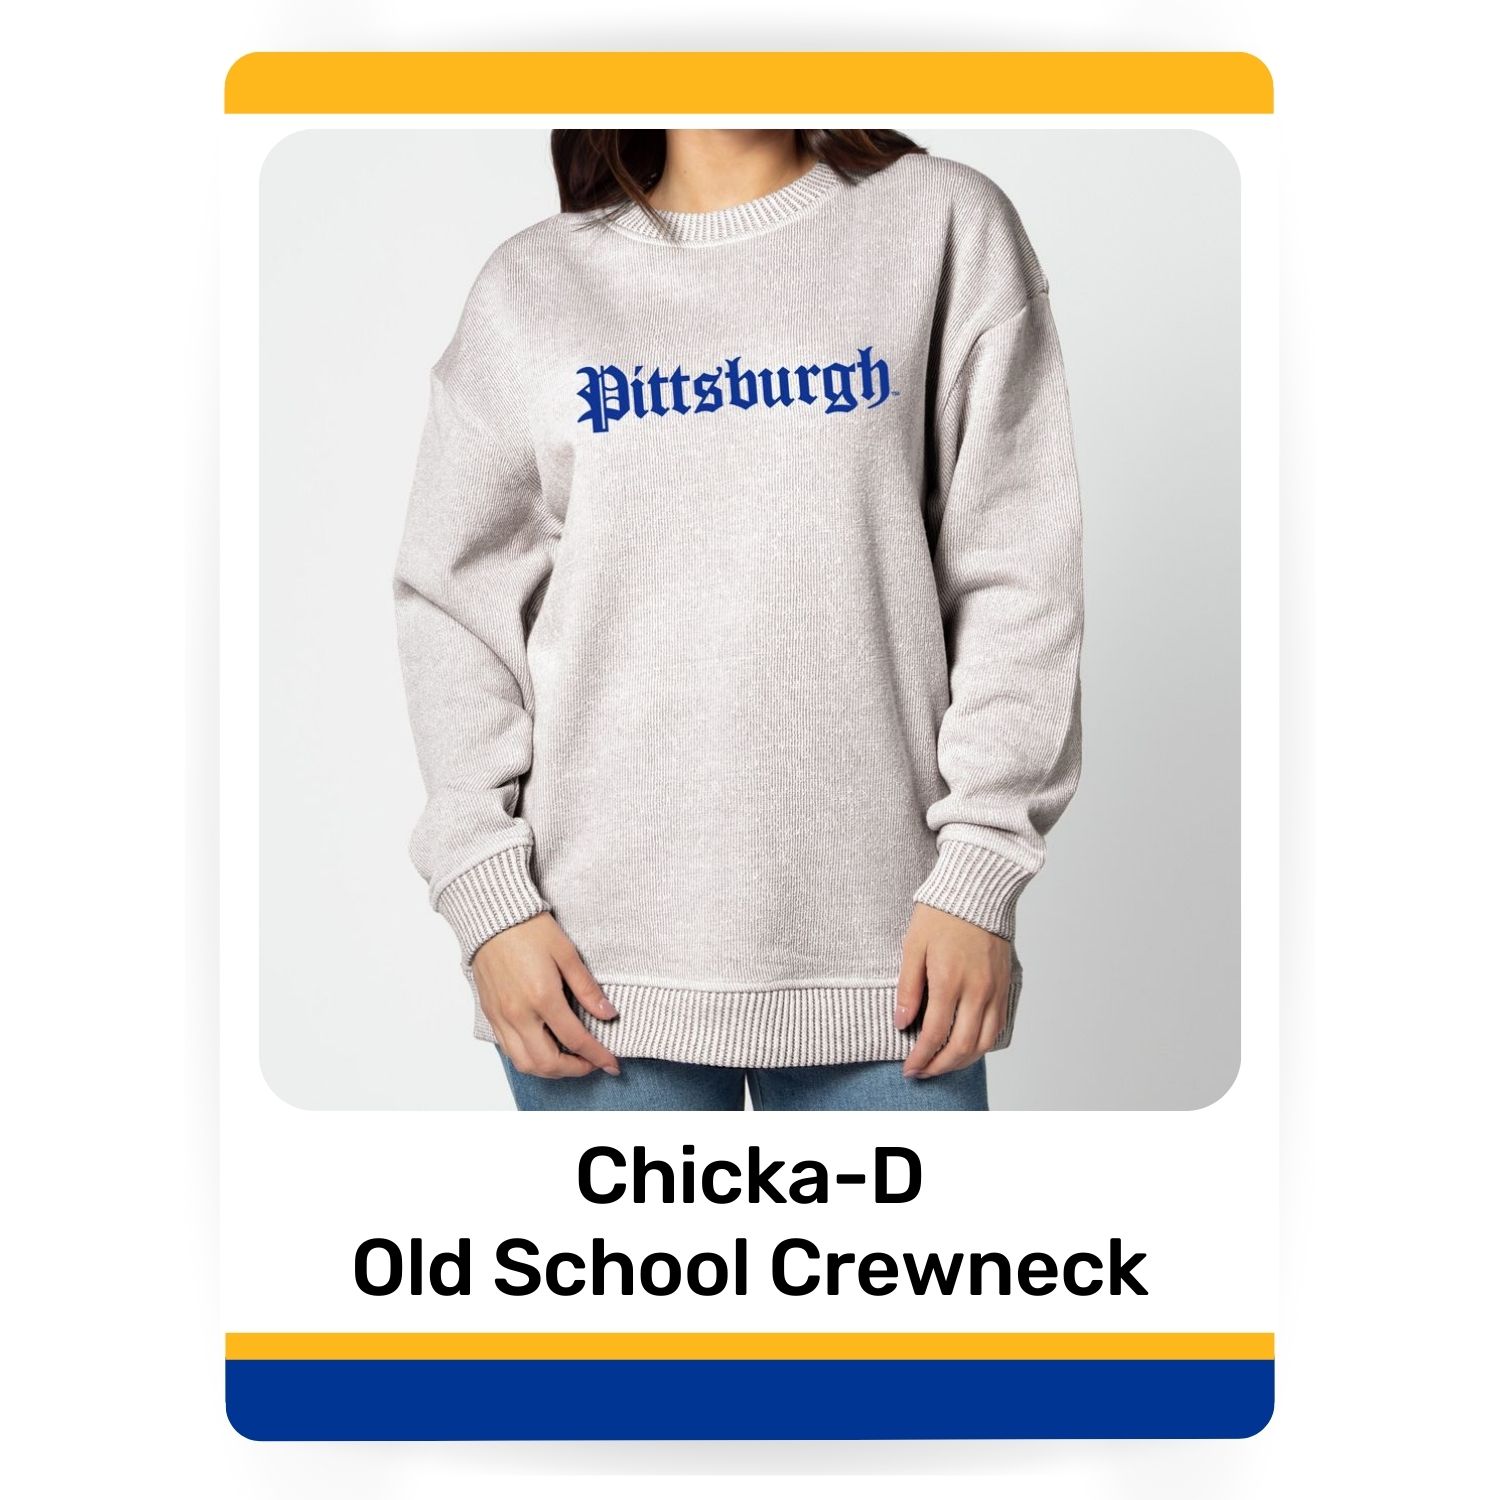 Chicka-D Old School Crewneck